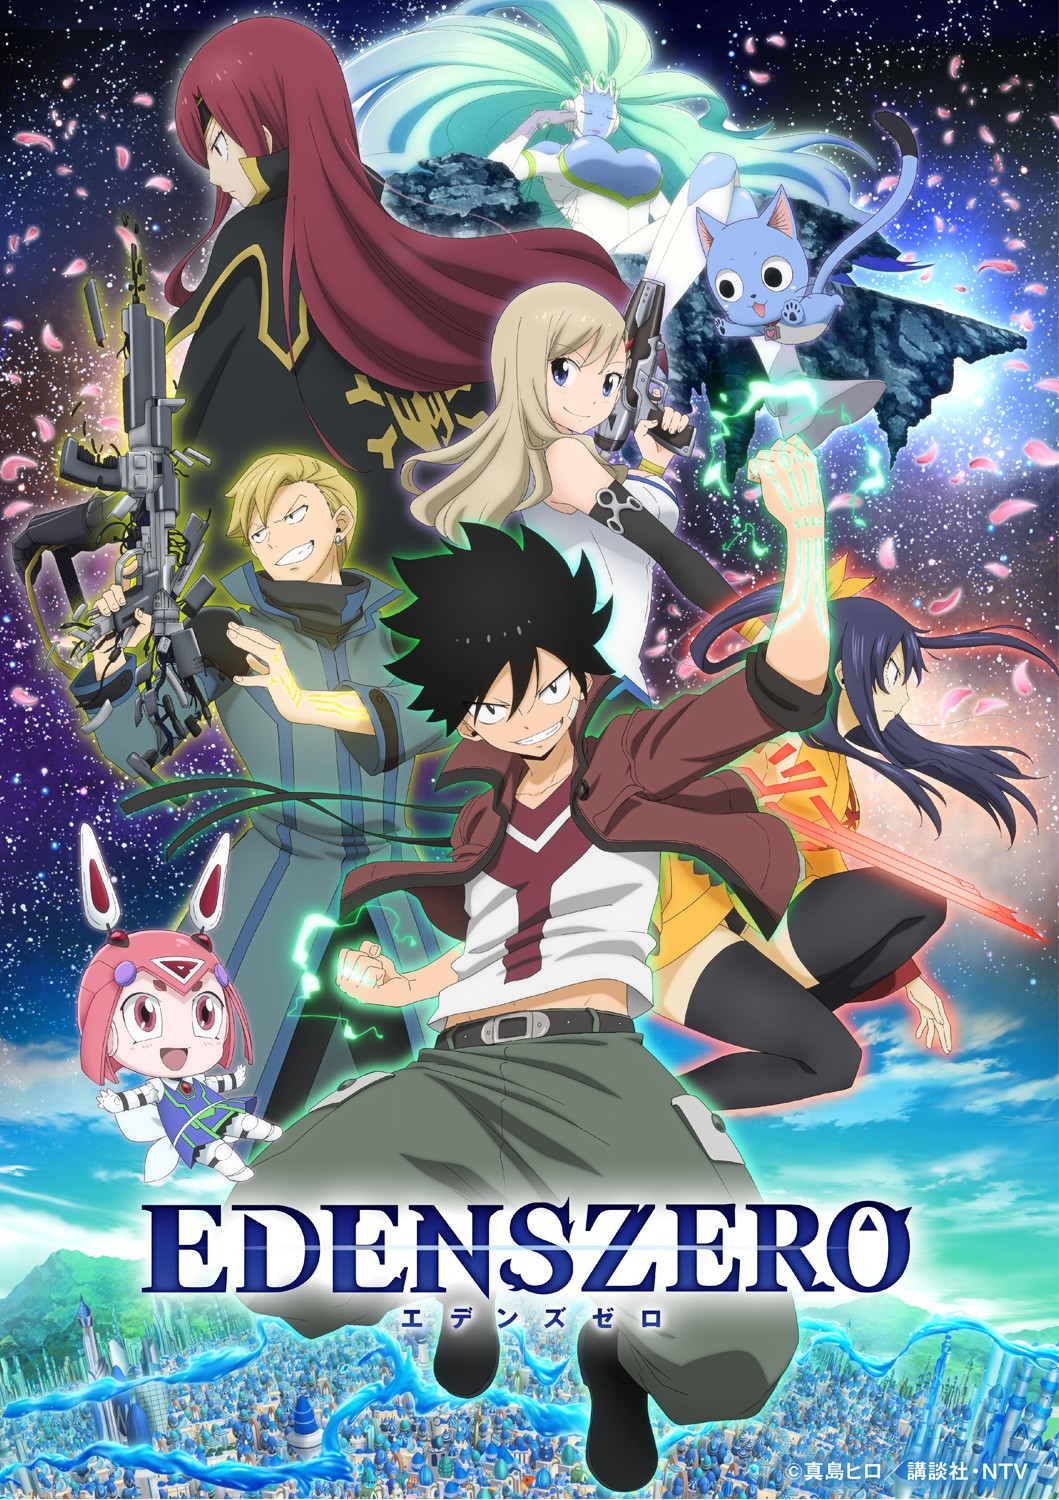 Edens Zero' ya tiene fecha de estreno para su temporada 2: el